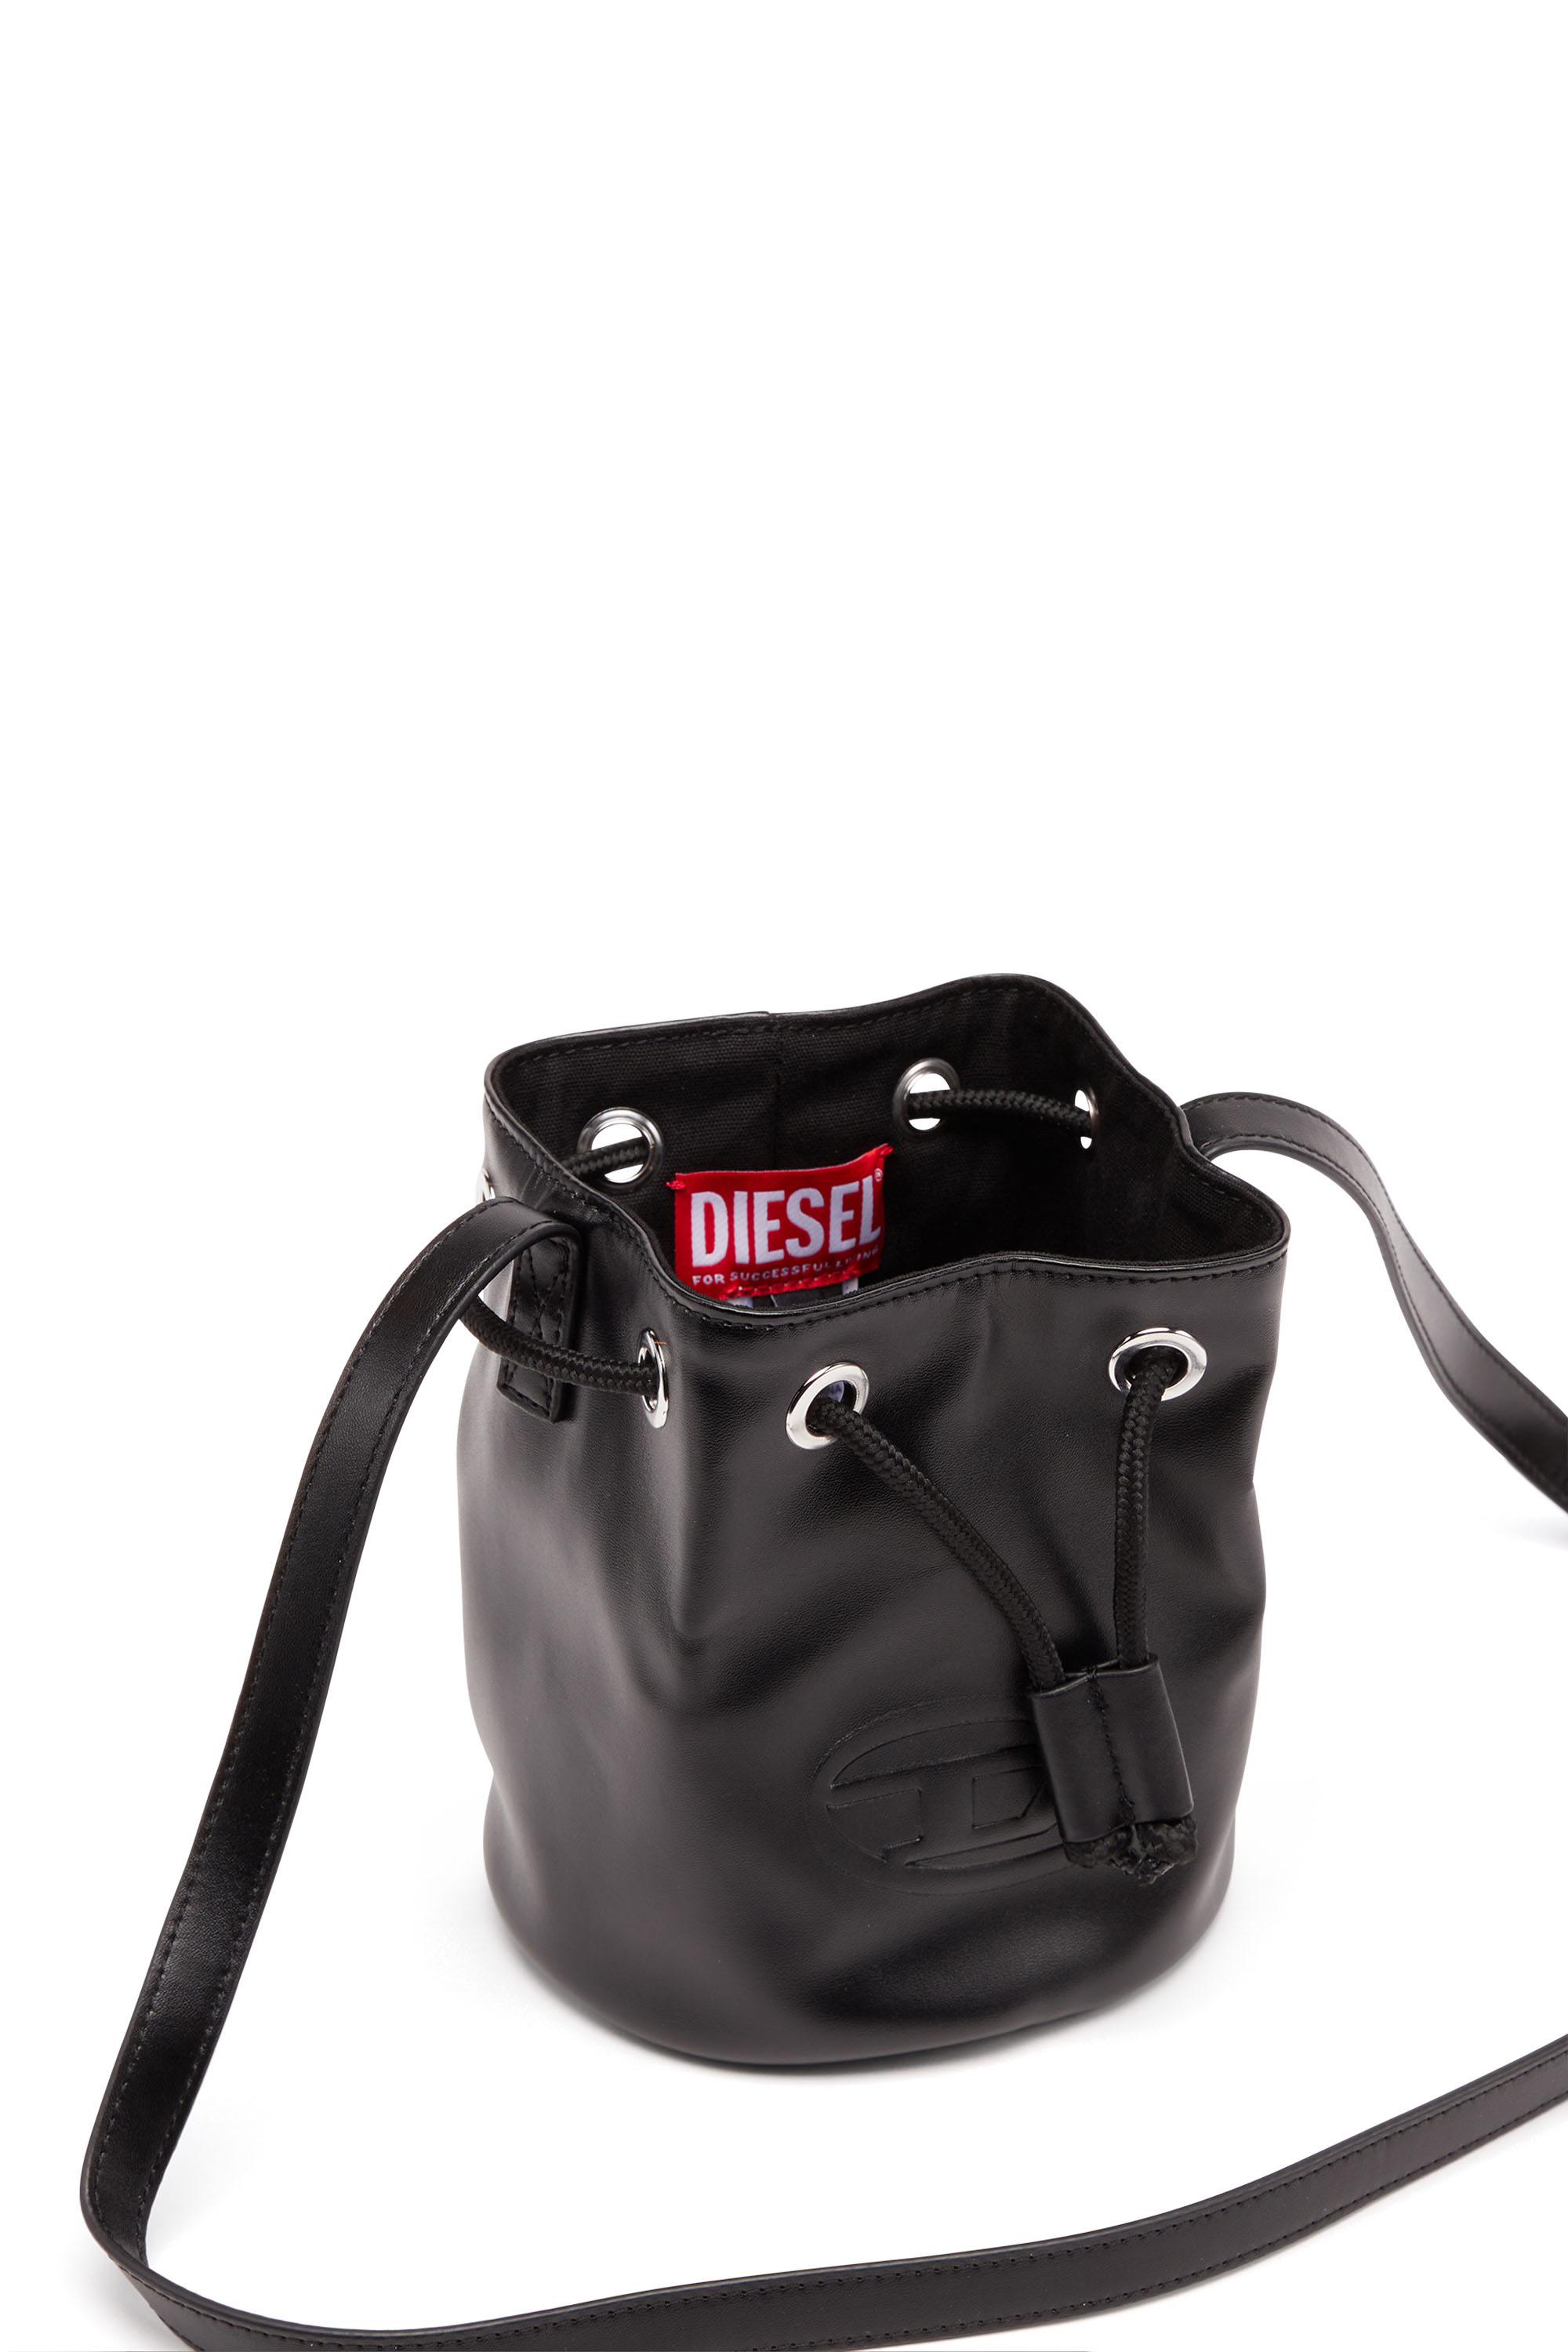 Diesel - WELLTY, Negro - Image 4